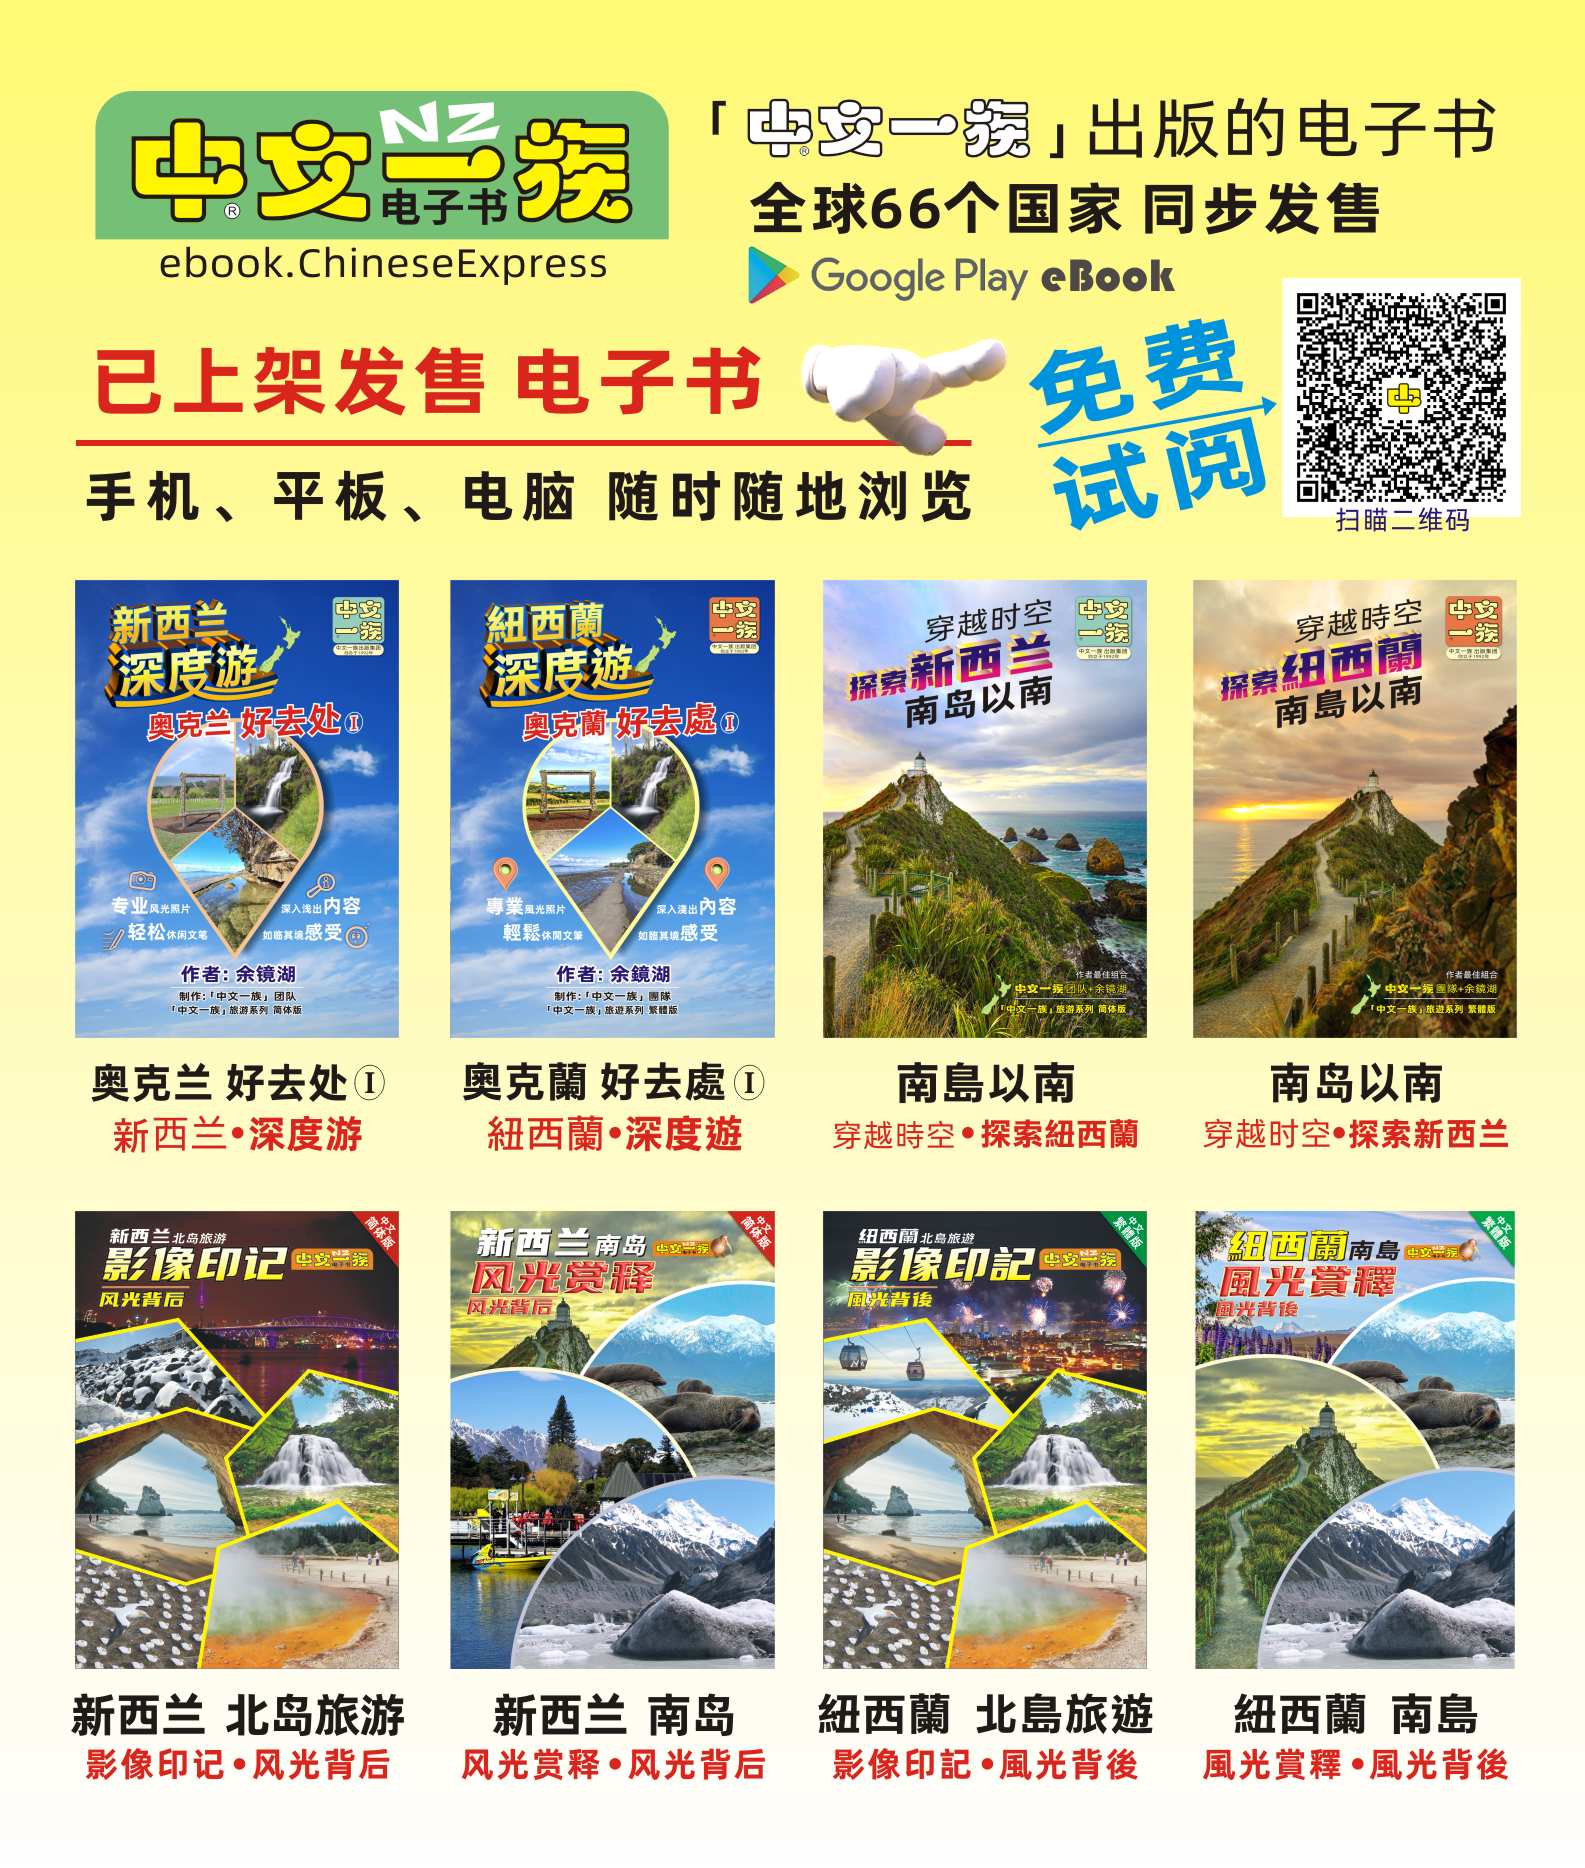 中文一族电子书出版新西兰旅游